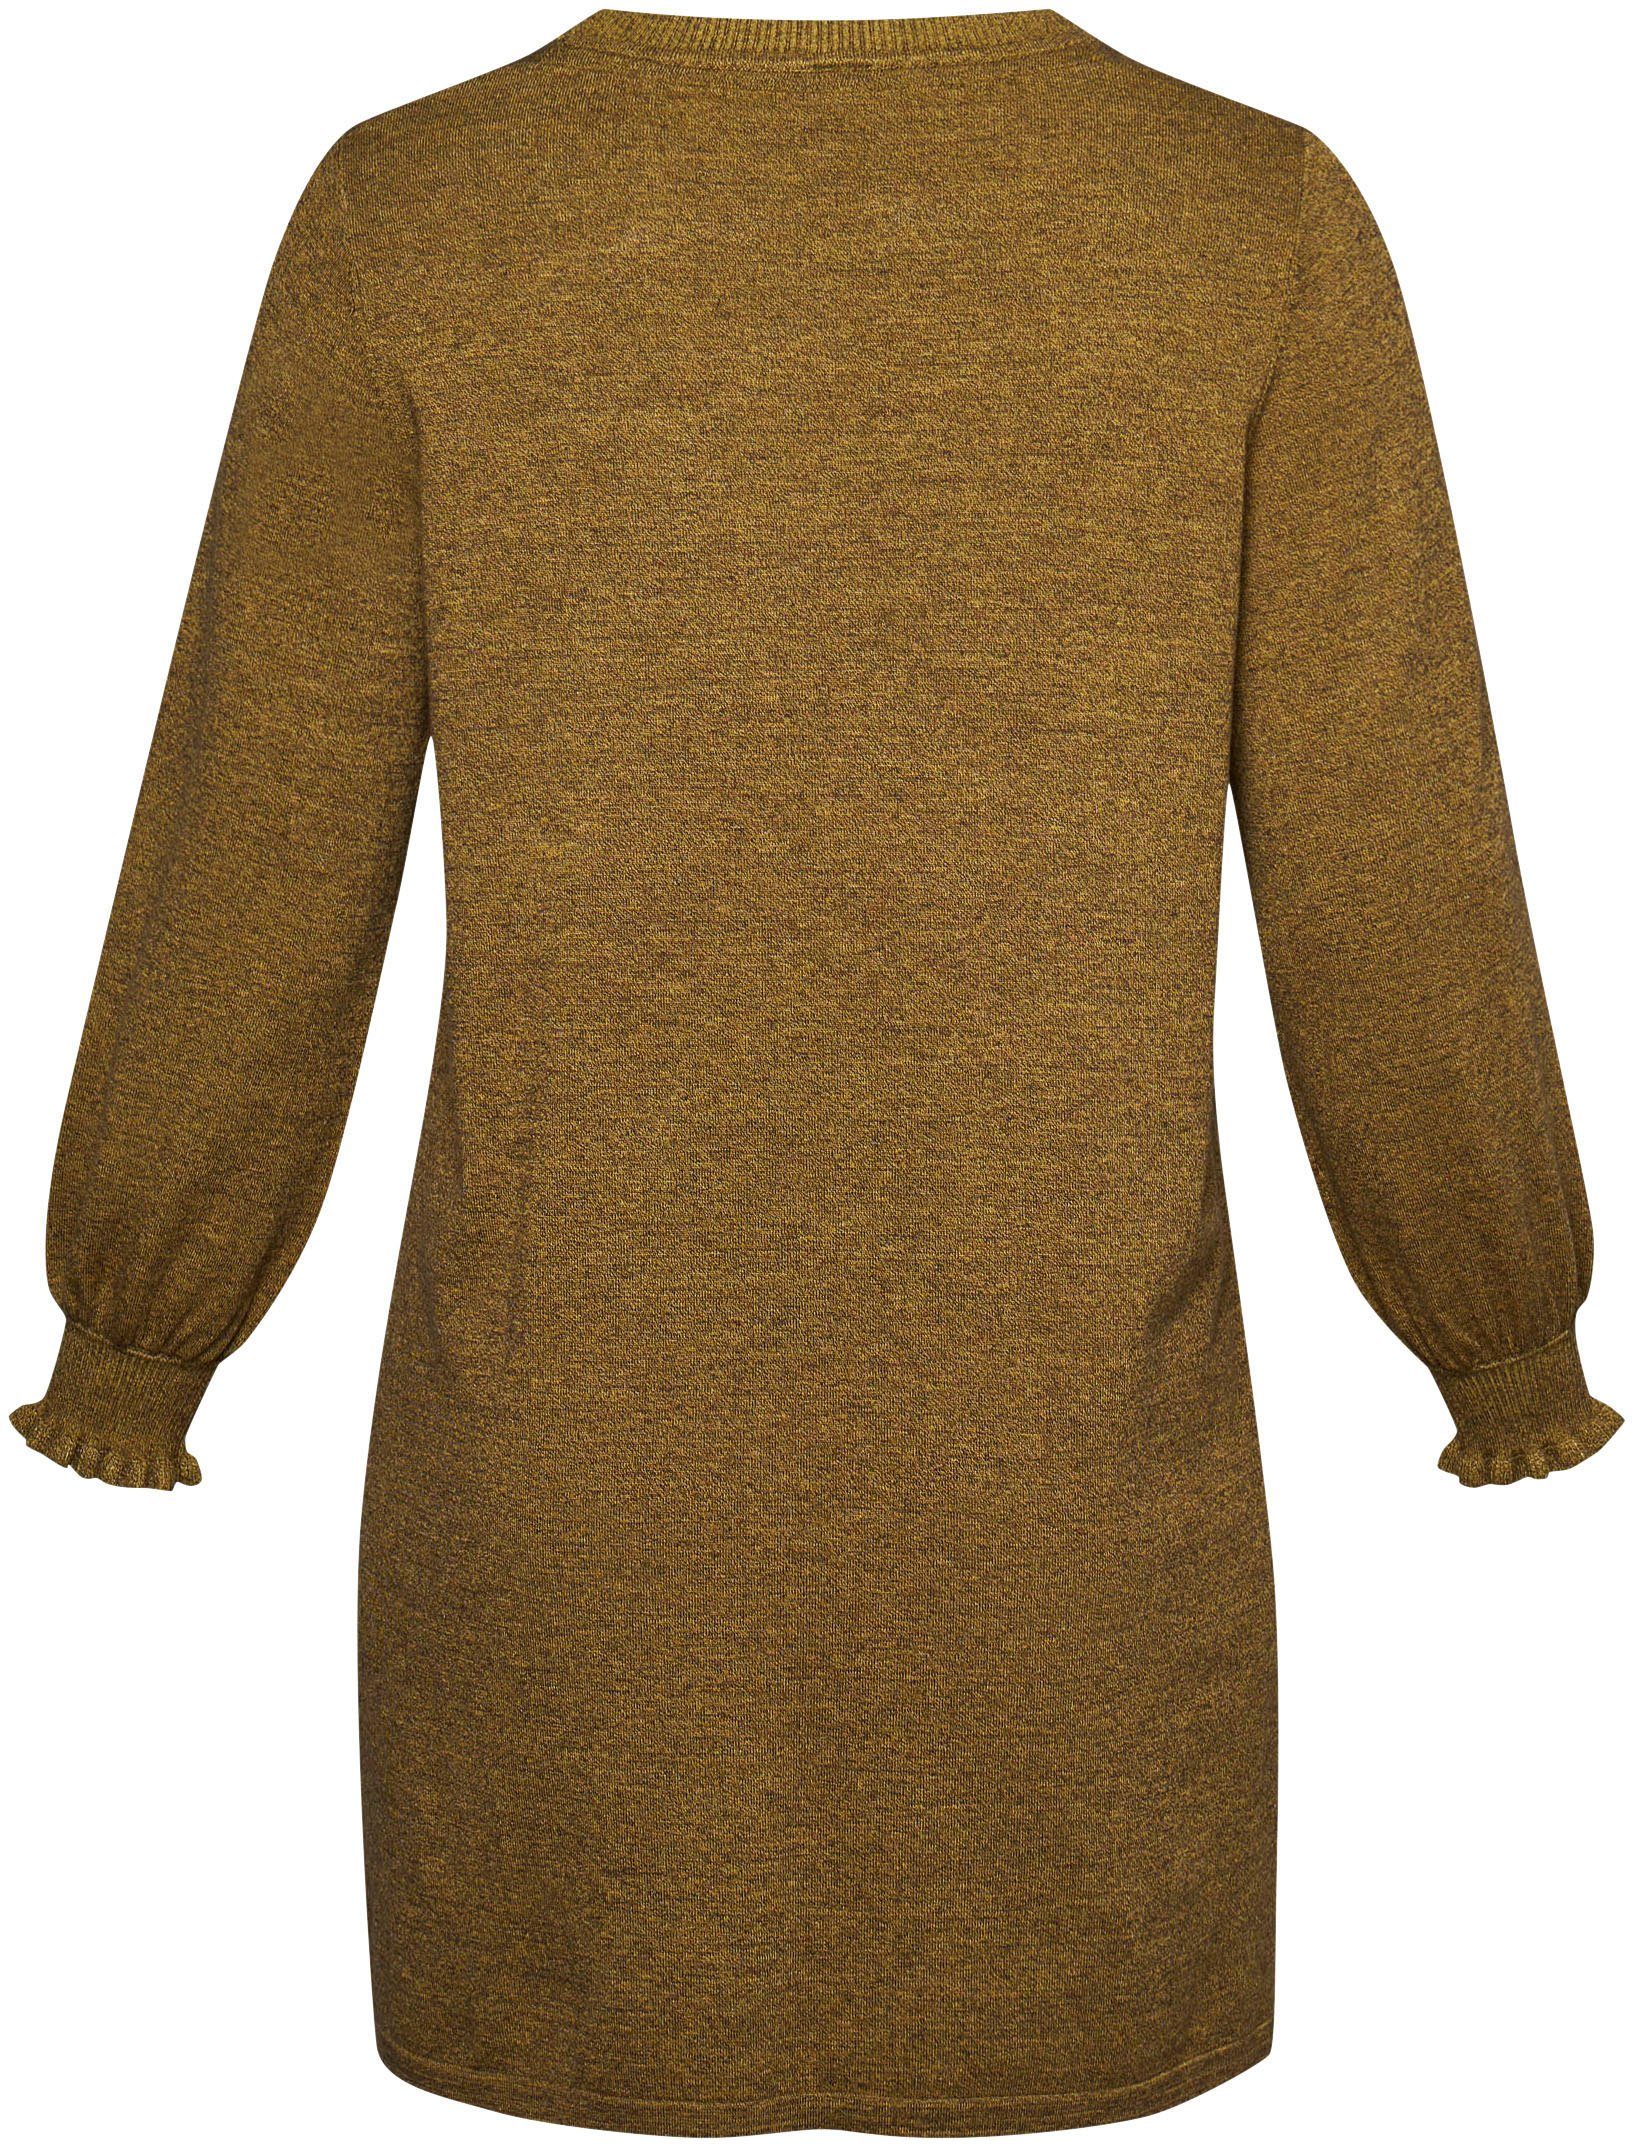 Ärmelabschluss am Sweatkleid Dress Rüschen autumn mos Knit mit AD ADIA